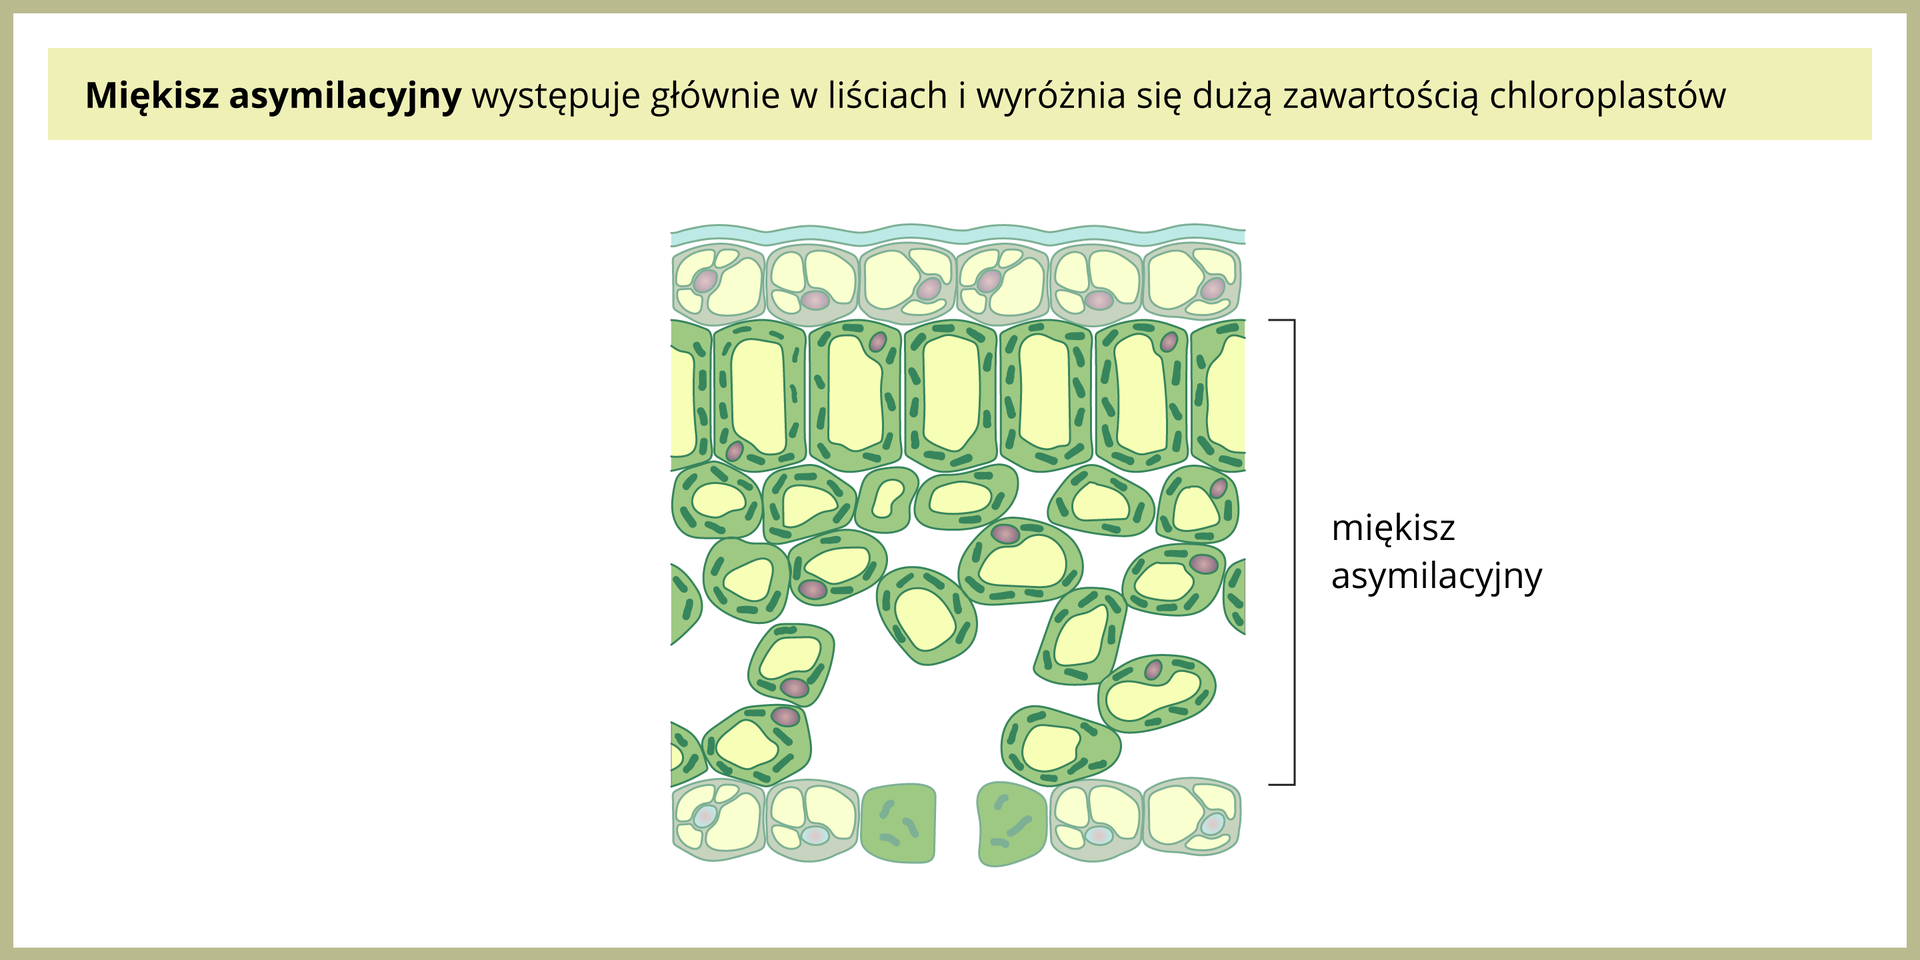 Ilustracja po lewej przedstawia zielony miękisz asymilacyjny na przekroju przez liść. U góry i u dołu liścia znajdują się komórki skórki o grubych ścianach. Miedzy nimi znajdują się podłużne, ściśle ułożone obok siebie komórki miękiszu, a pod nimi mniejsze, luźniej ułożone. W tych komórkach jest wiele chloroplastów.